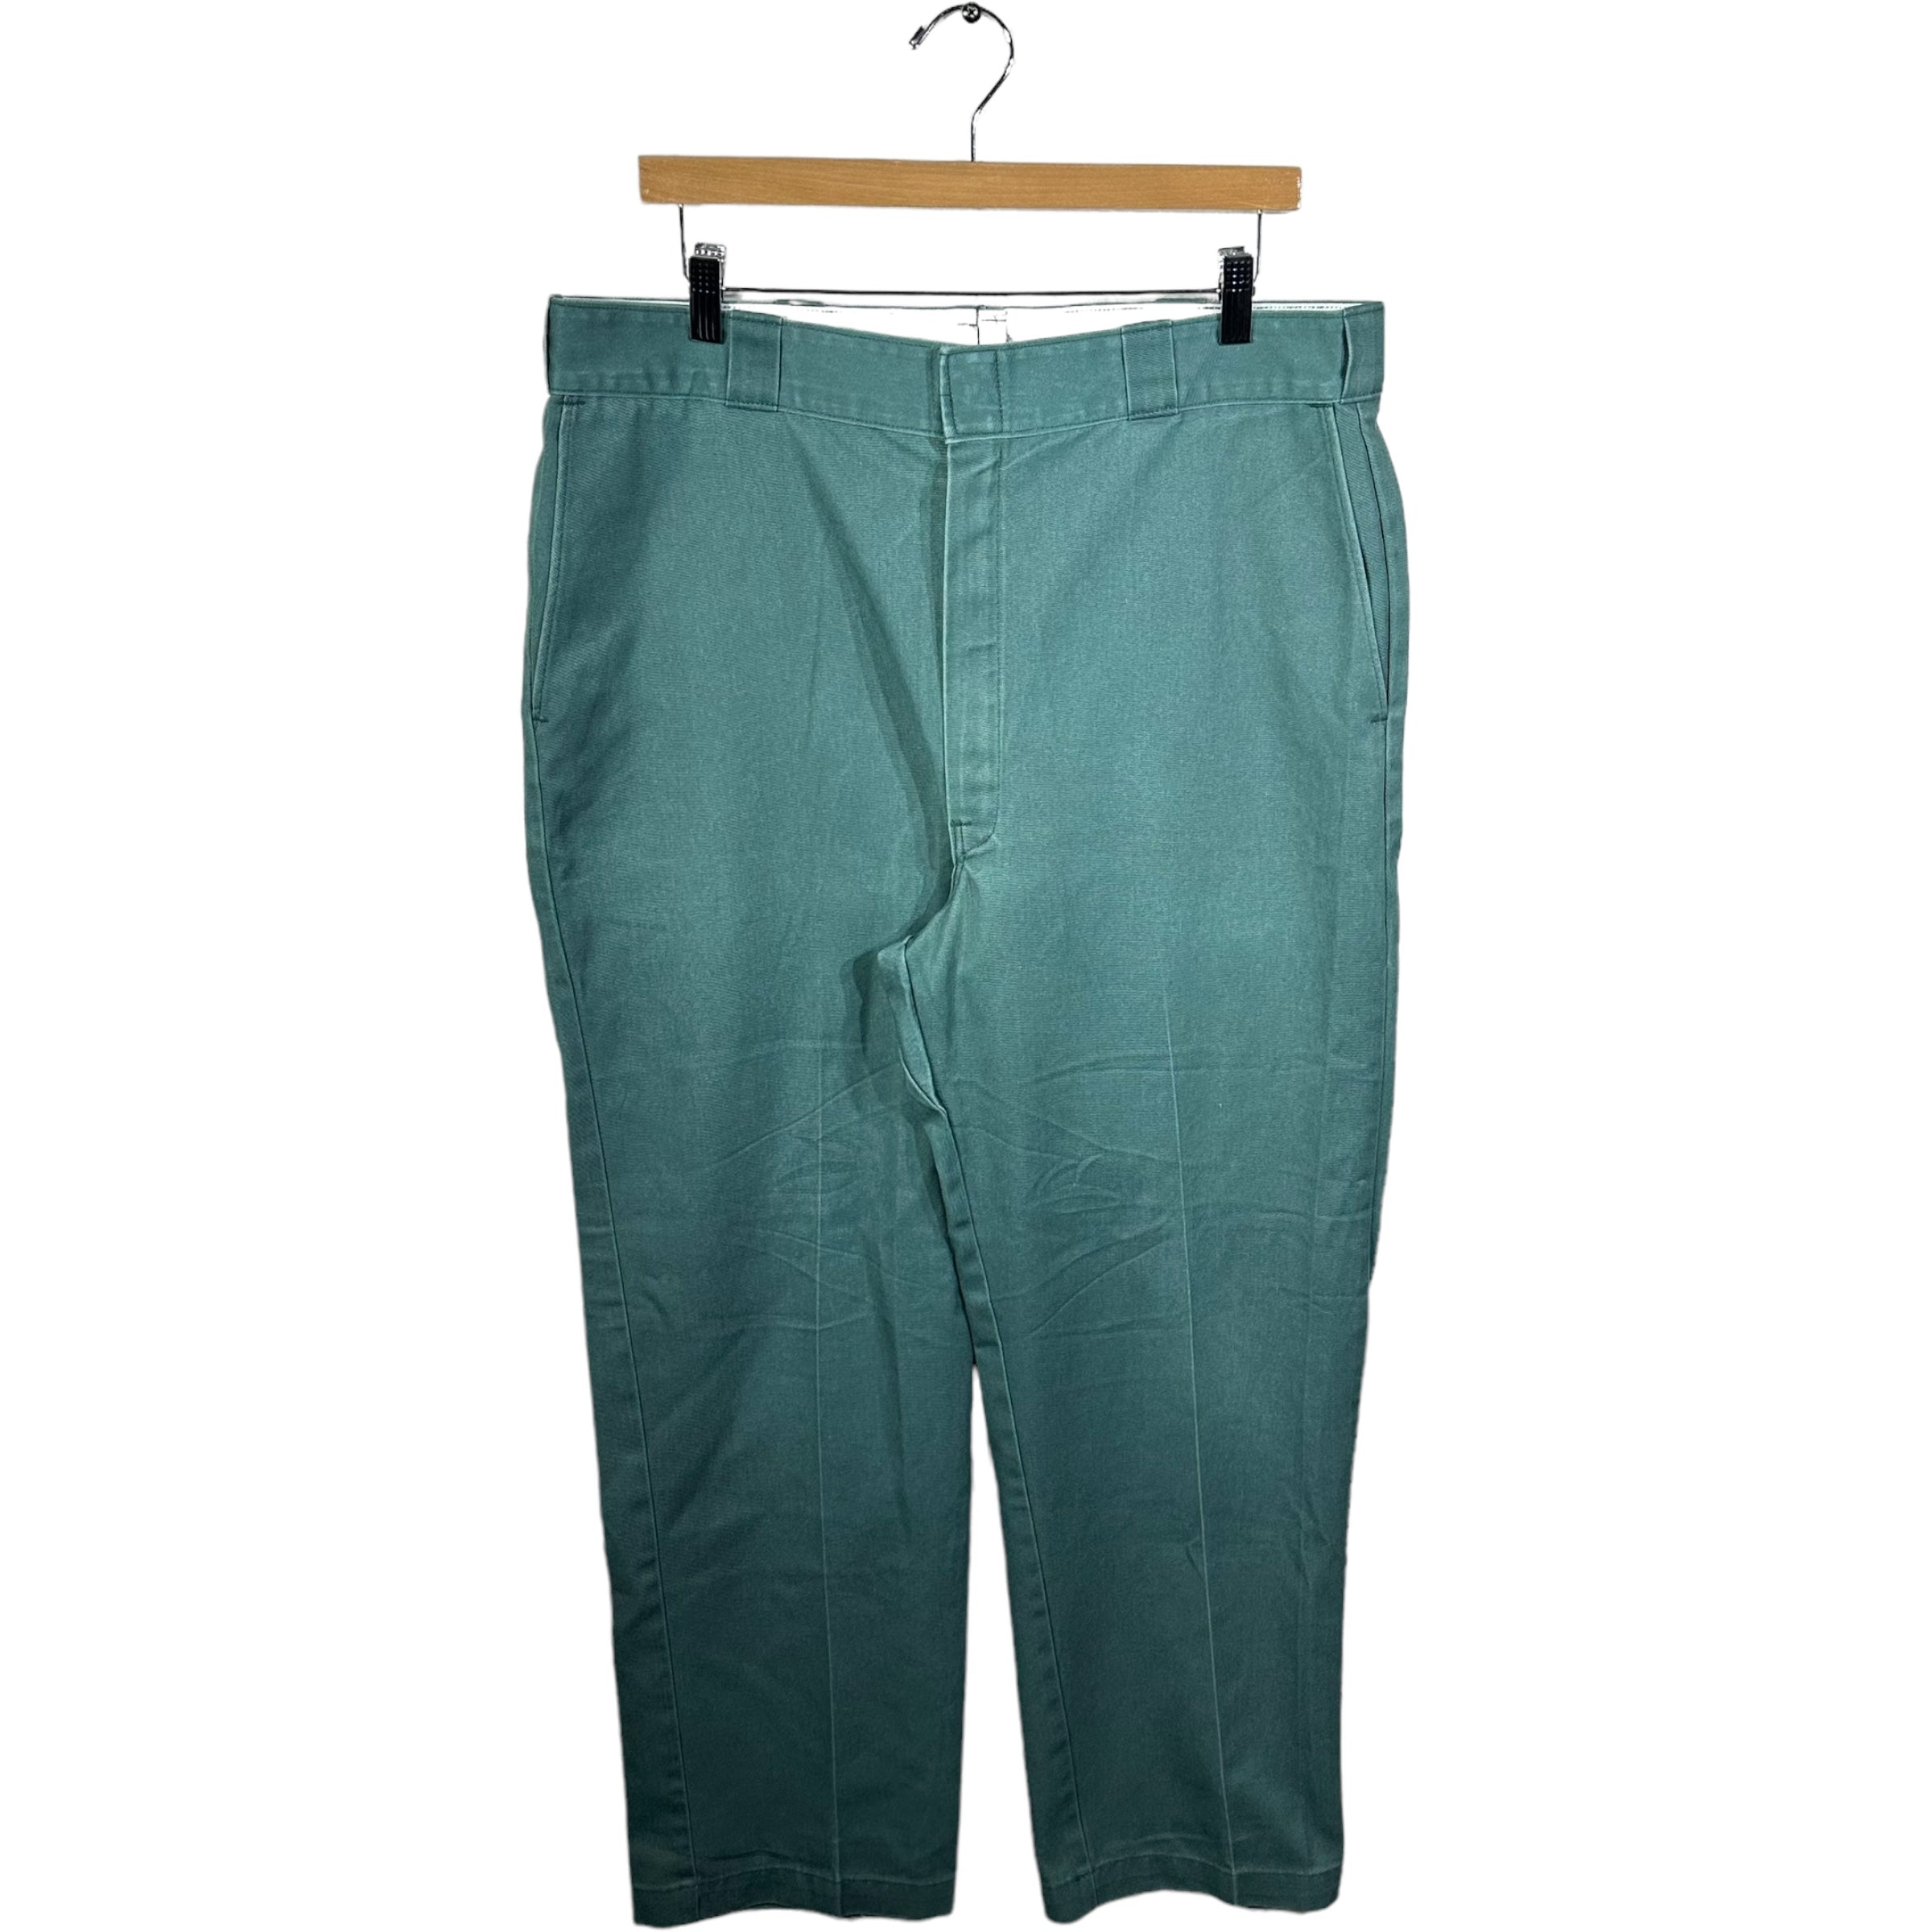 Vintage Dickies 974 Pants